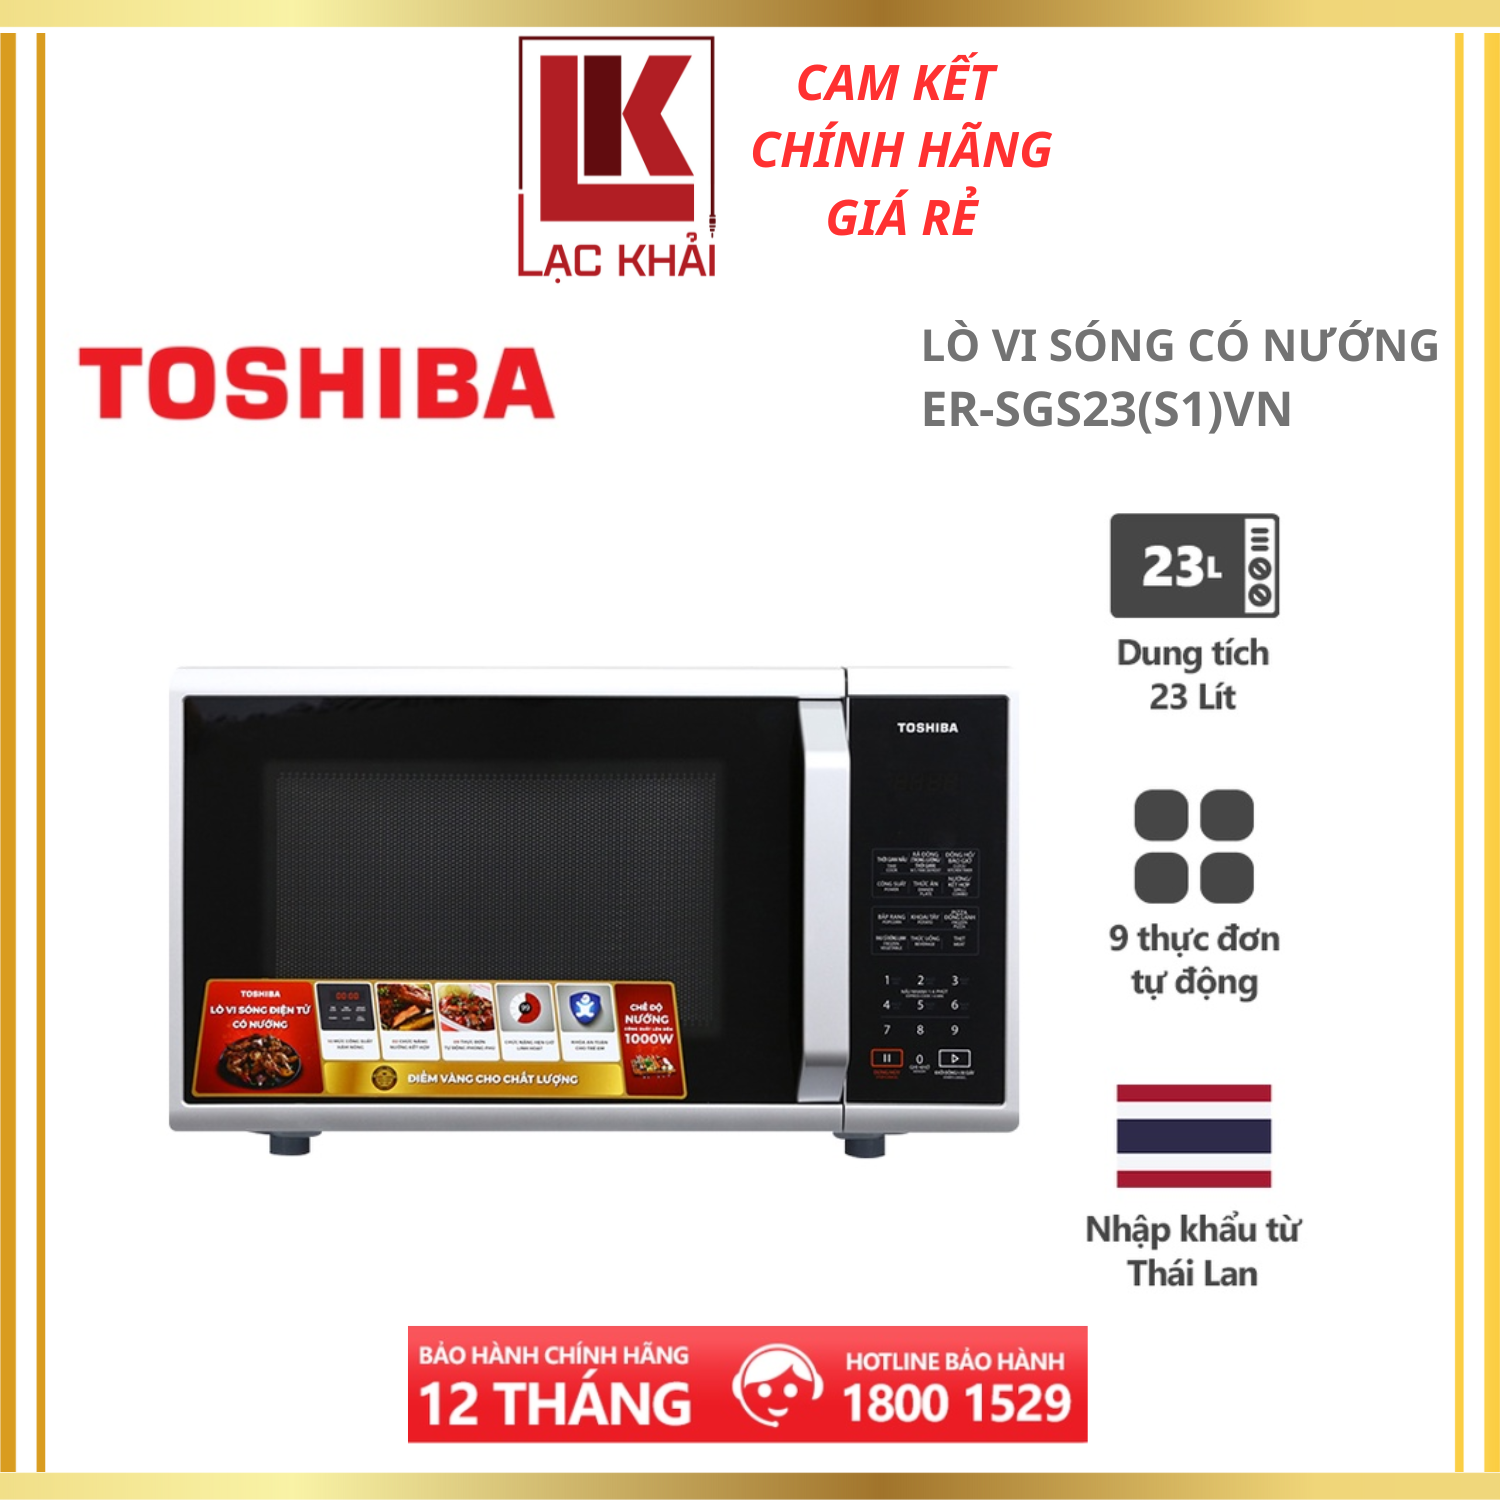 Lò vi sóng Toshiba ER-SGS23(S1)VN - Dung tích 23L - Xuất xứ Thái Lan - Có chức năng nướng - Điện tử - Công suất 800W - Hàng chính hãng, bảo hành 12 tháng, chất lượng Nhật Bản